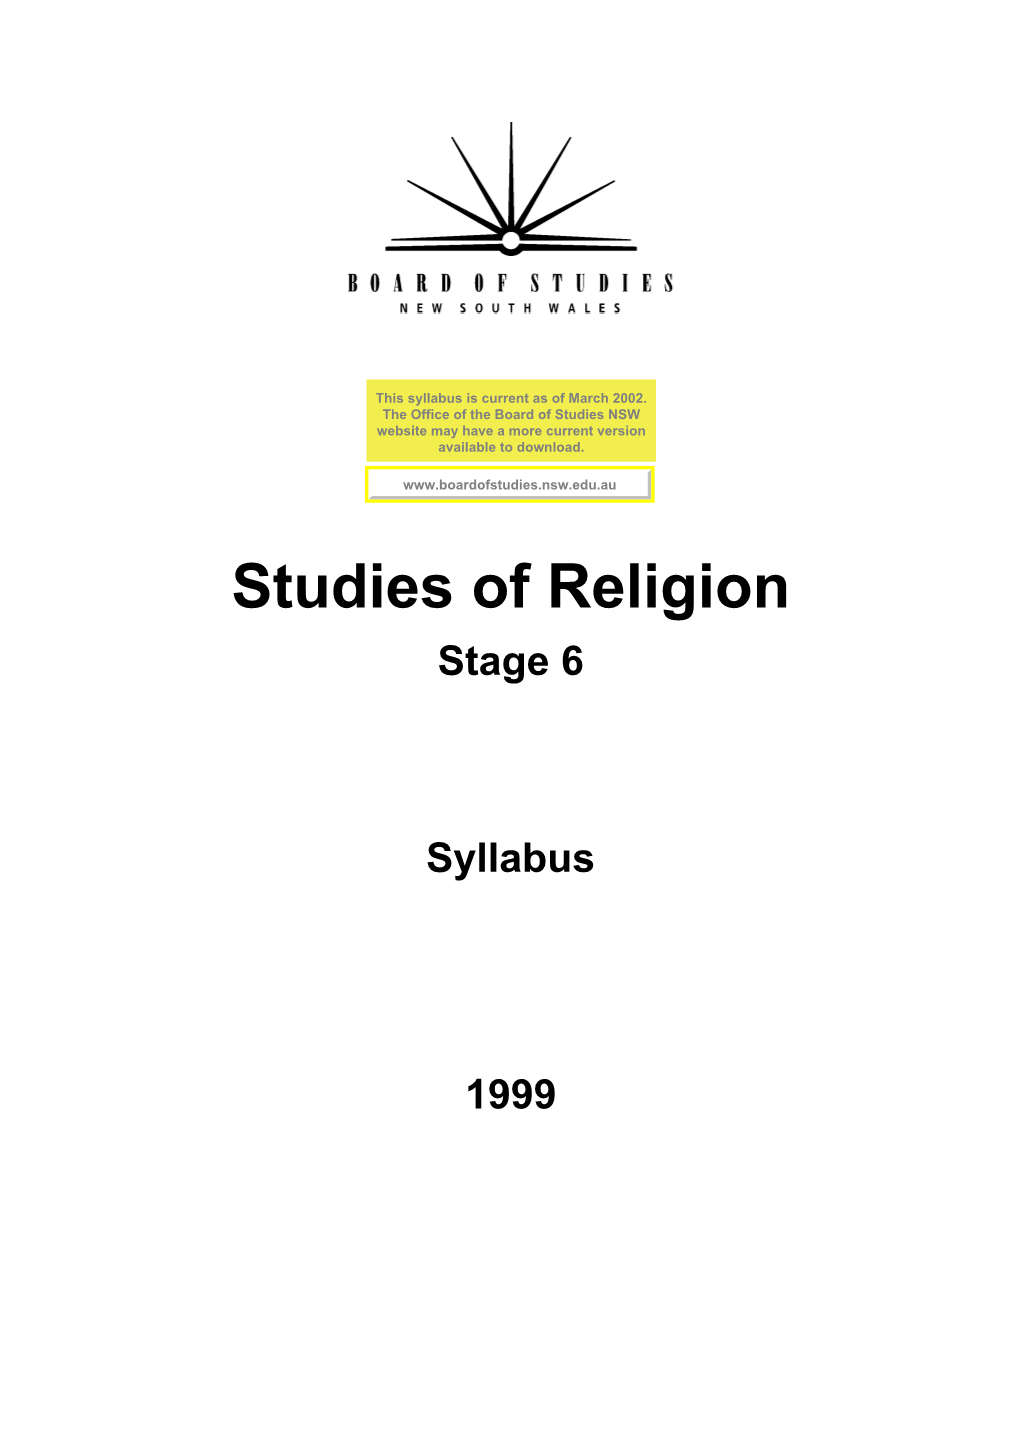 Studies of Religion Stage 6